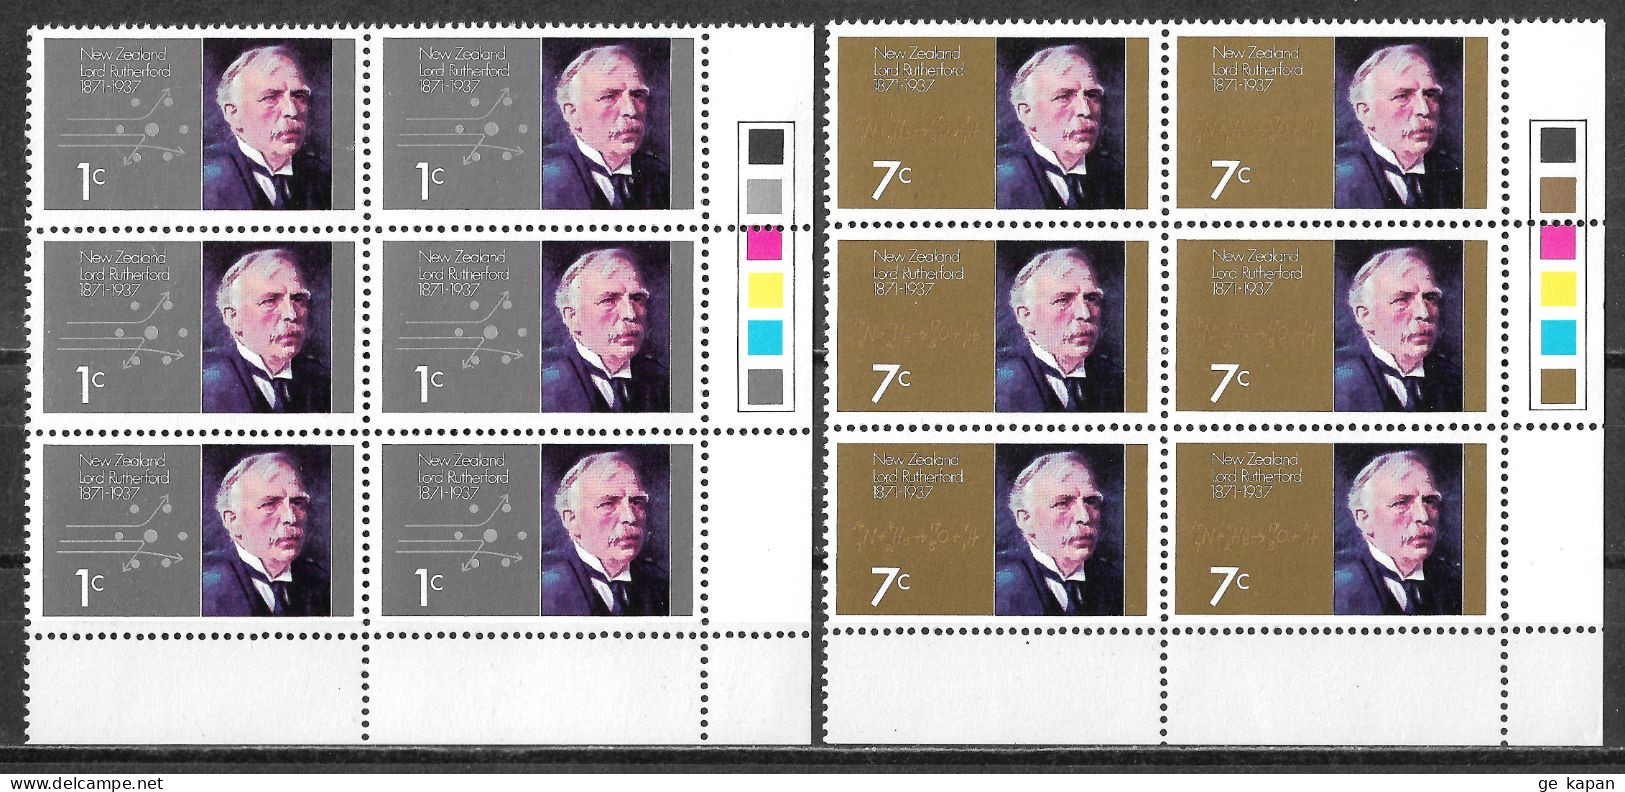 1971 NEW ZEALAND Complete Set Of 2 Blocks Of 6 MNH OG Stamps (Scott # 487,488) CV $5.40 - Nuevos